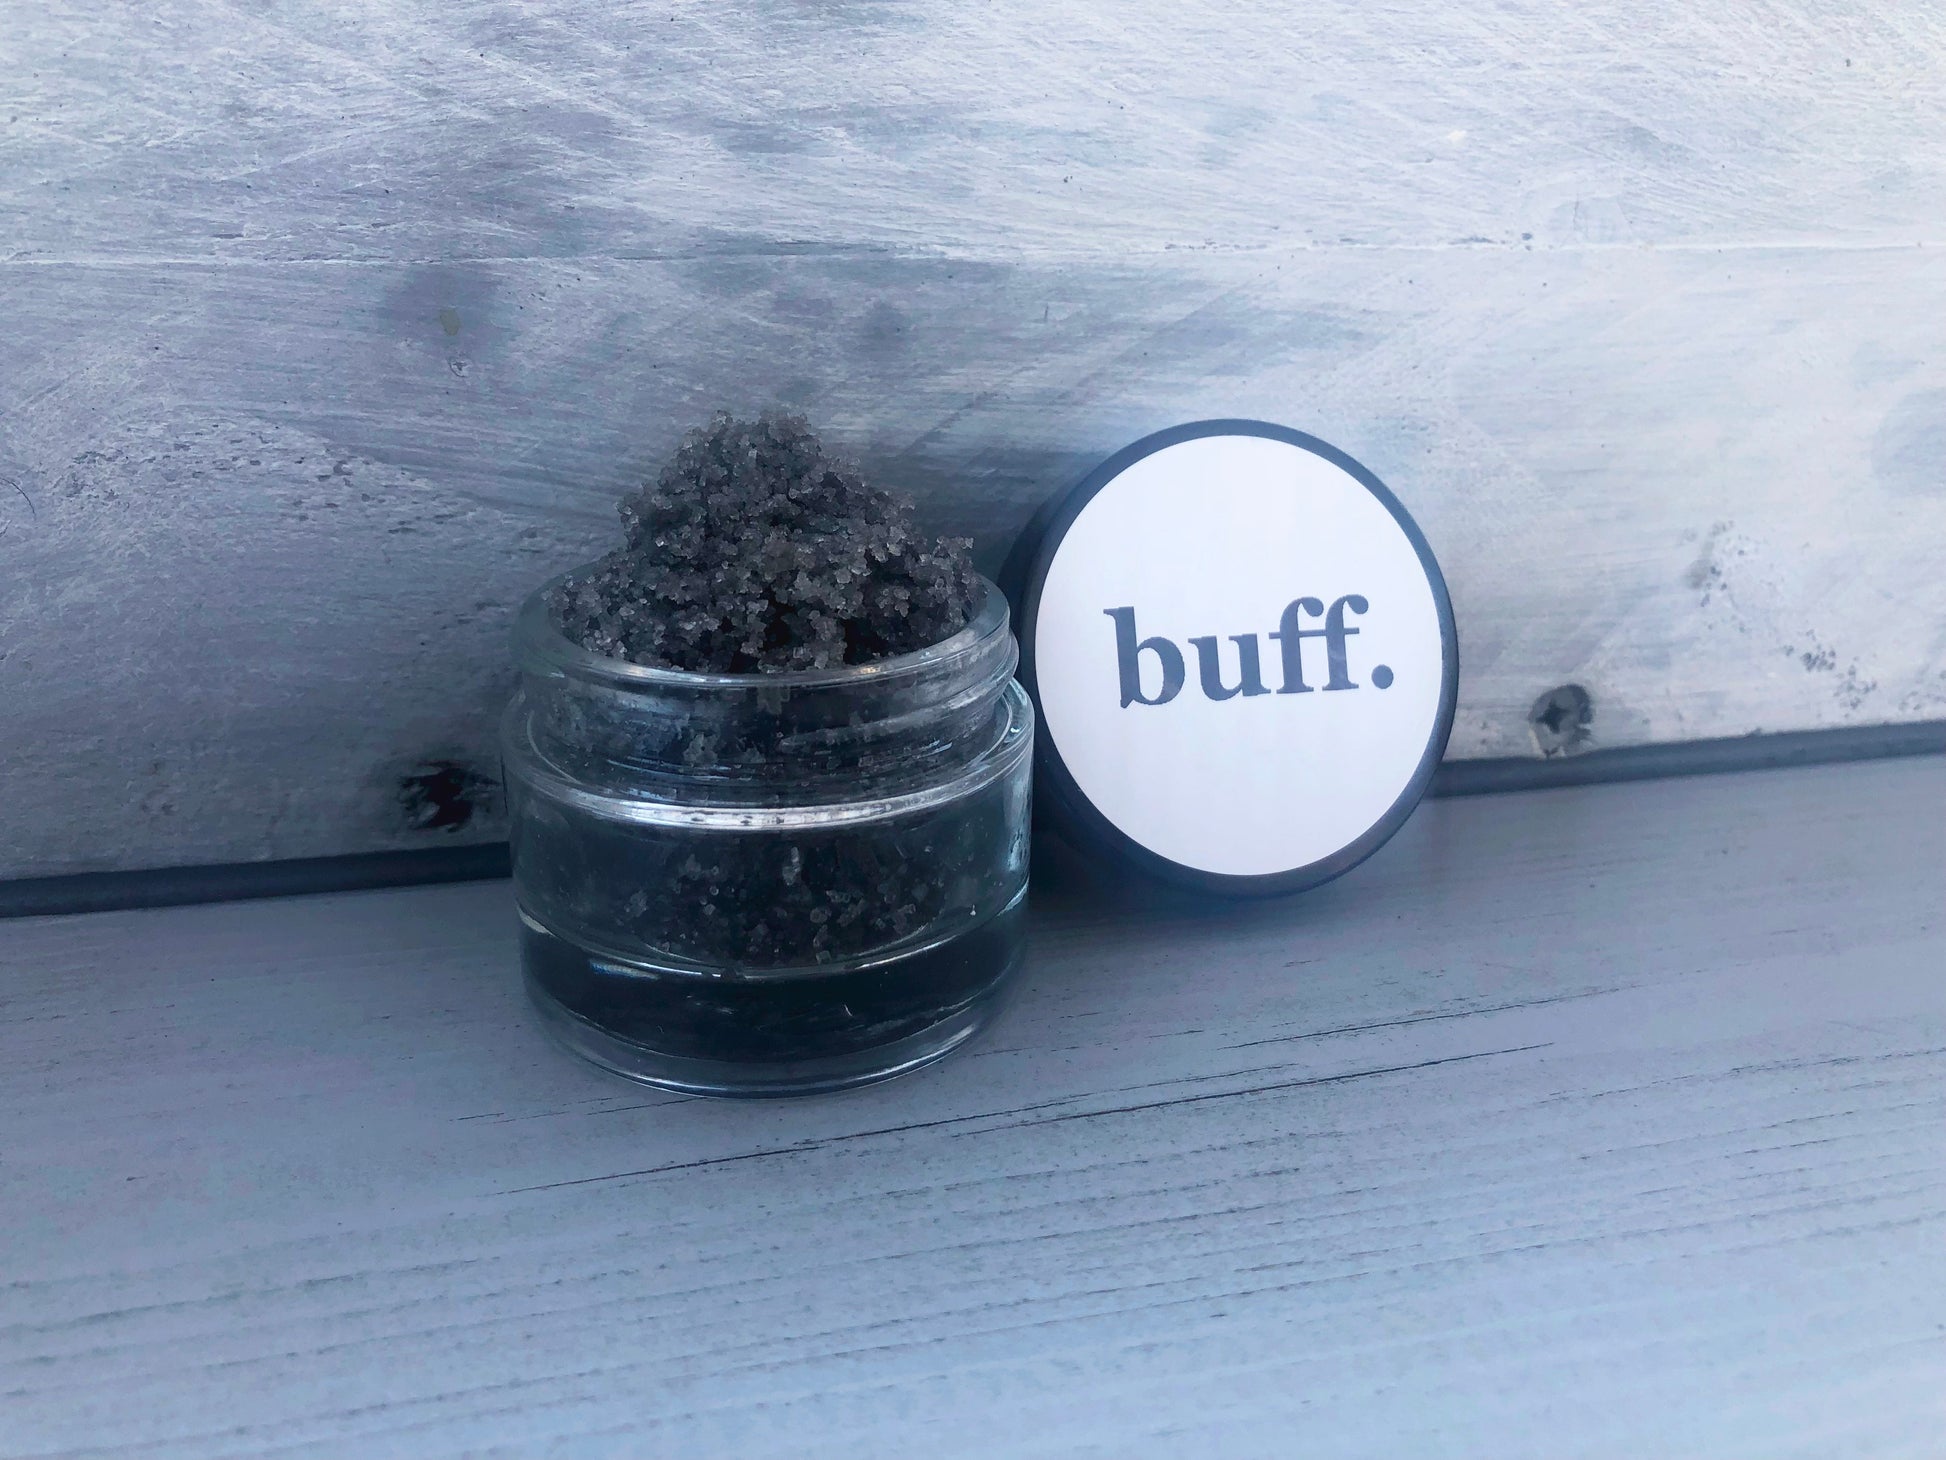 Salted Caramel grey black sugar lip scrub used for exfoliating in a glass jar